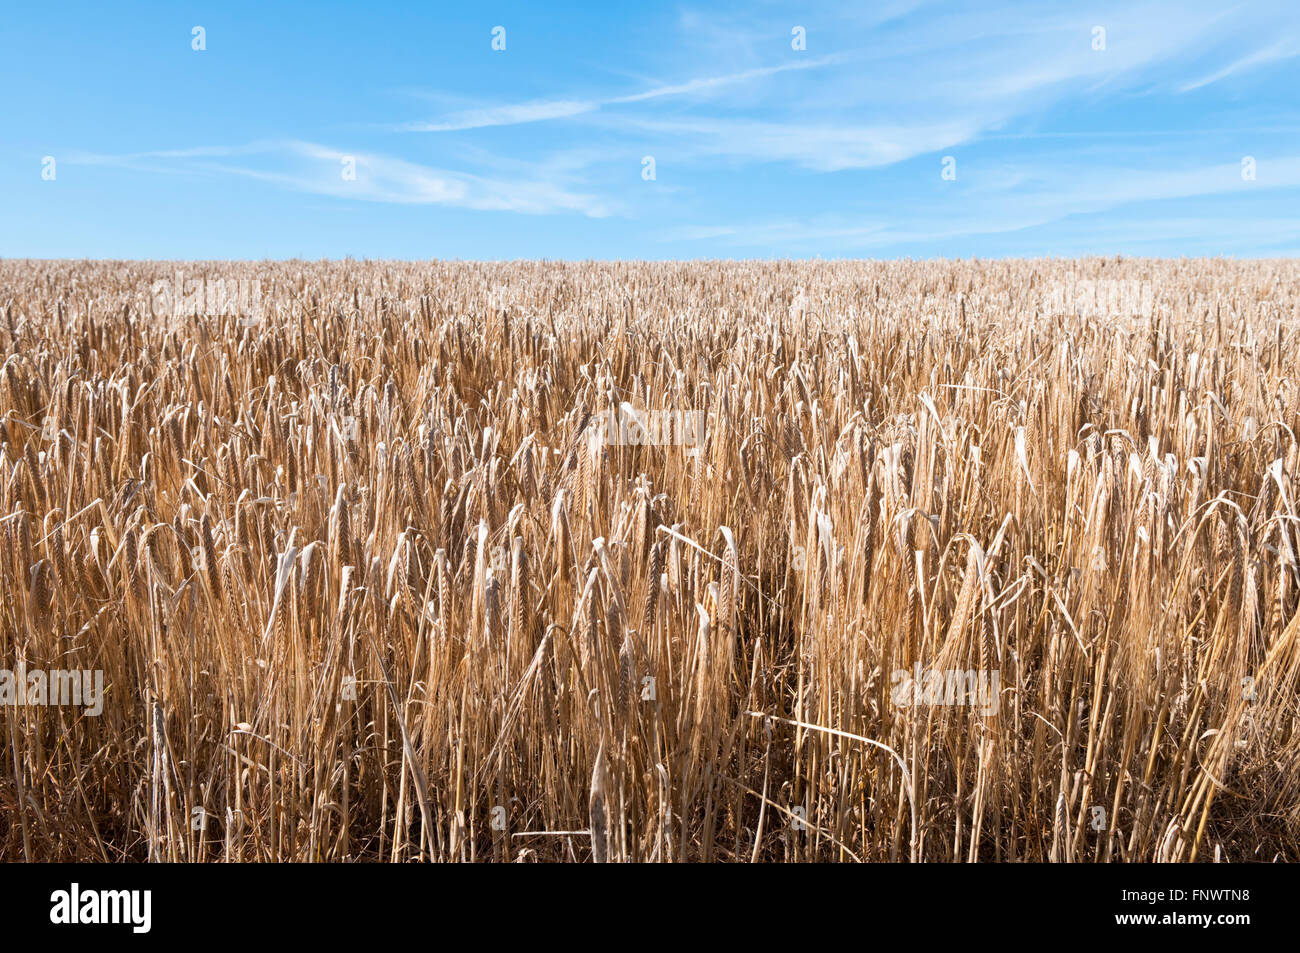 La culture du blé dans un champ sur les South Downs dans le Sussex, England, UK lors d'une journée ensoleillée Banque D'Images